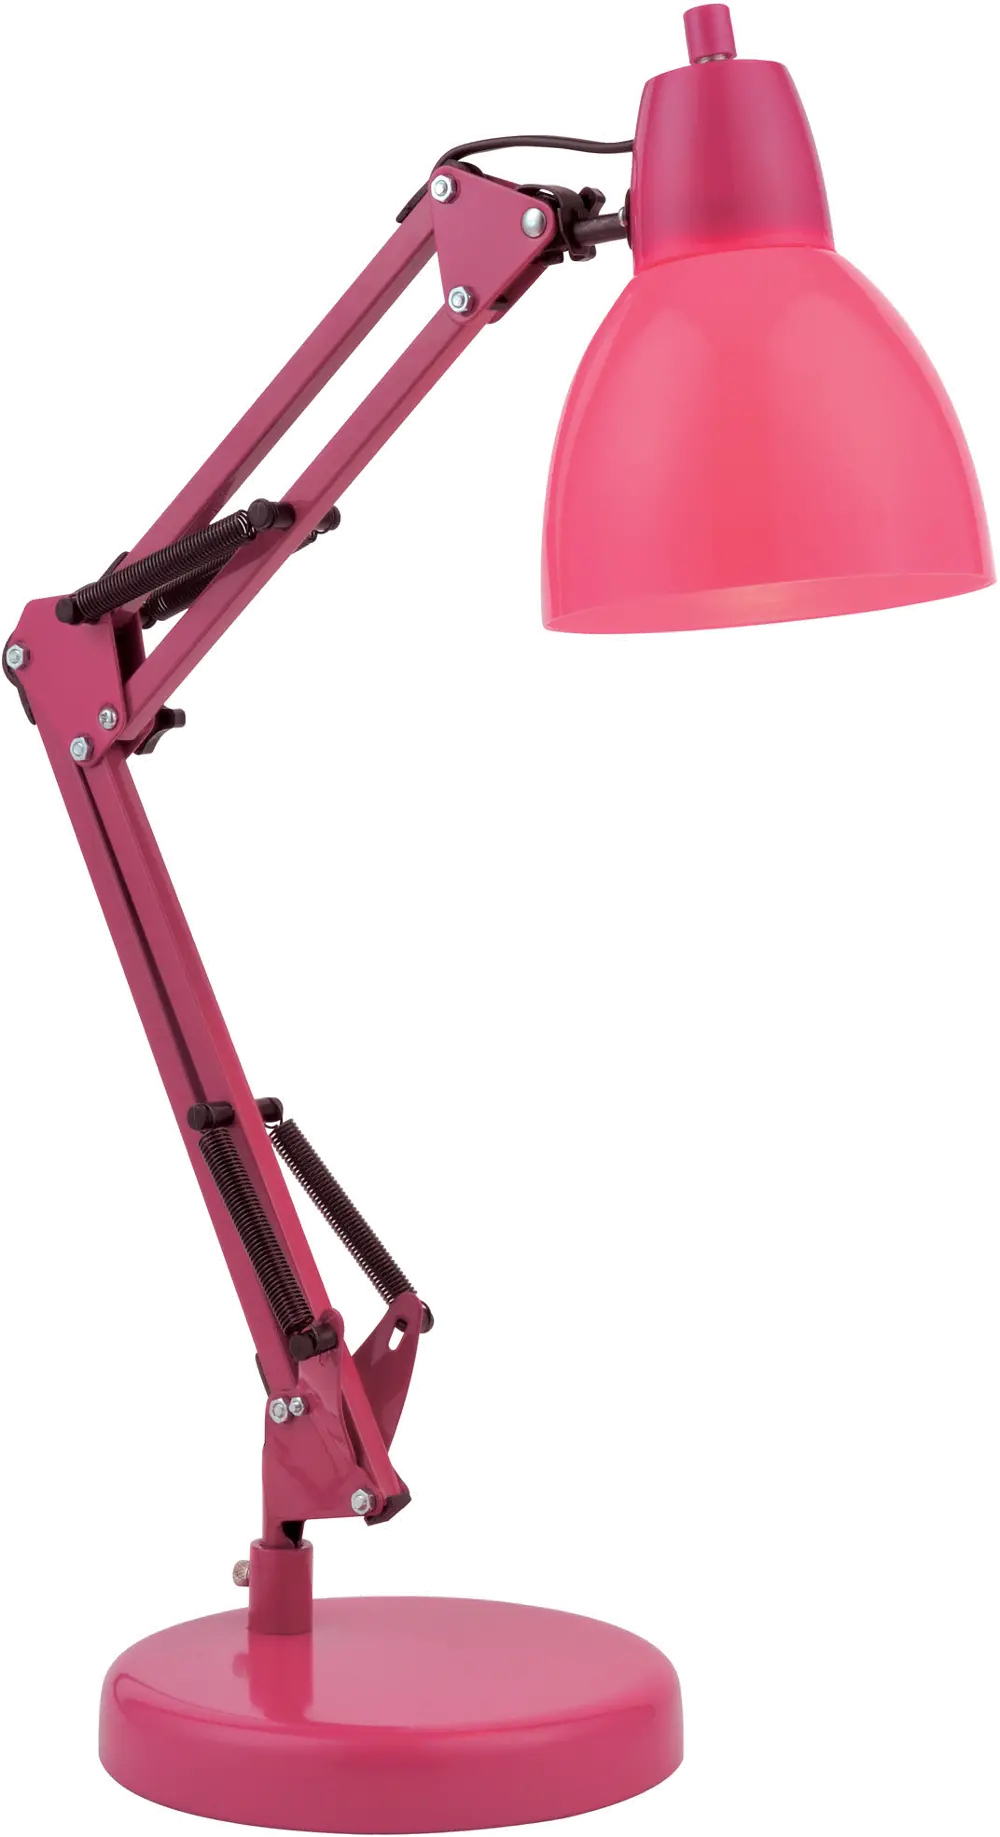 Colorful Adjustable Desk Lamp - Karsten-1